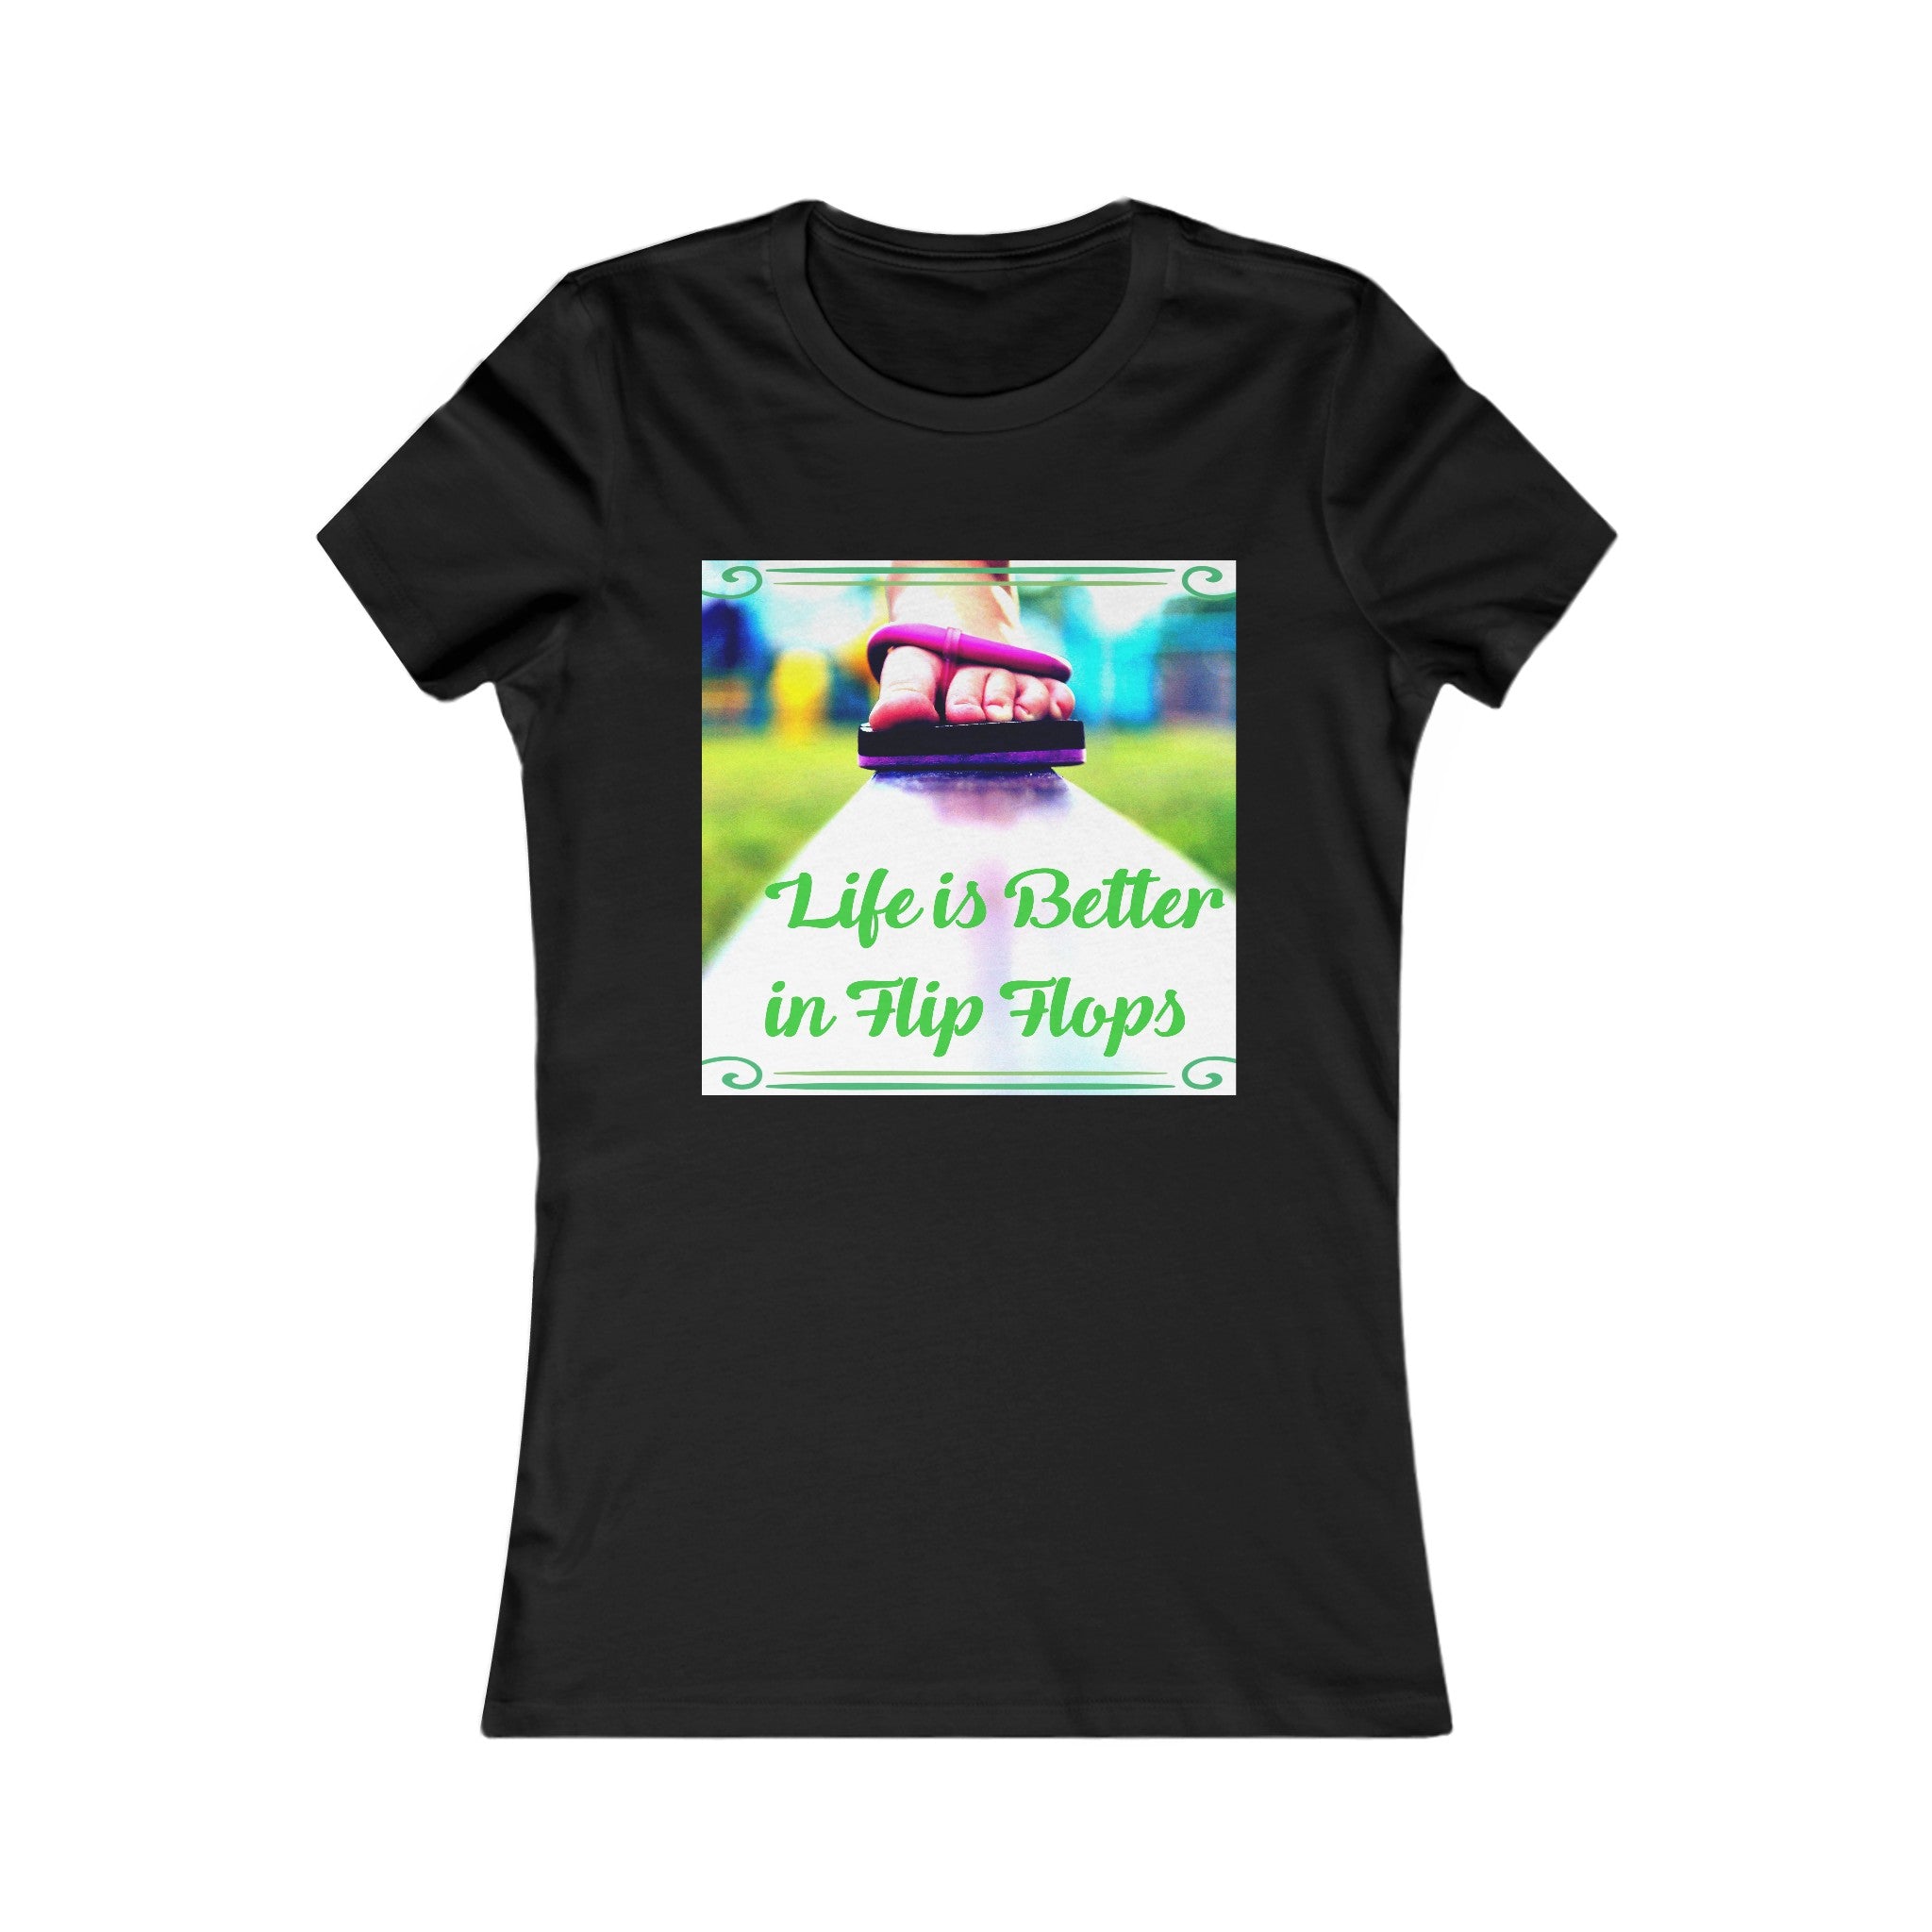 Life is Better in Flip Flops Women's Graphic T-shirt